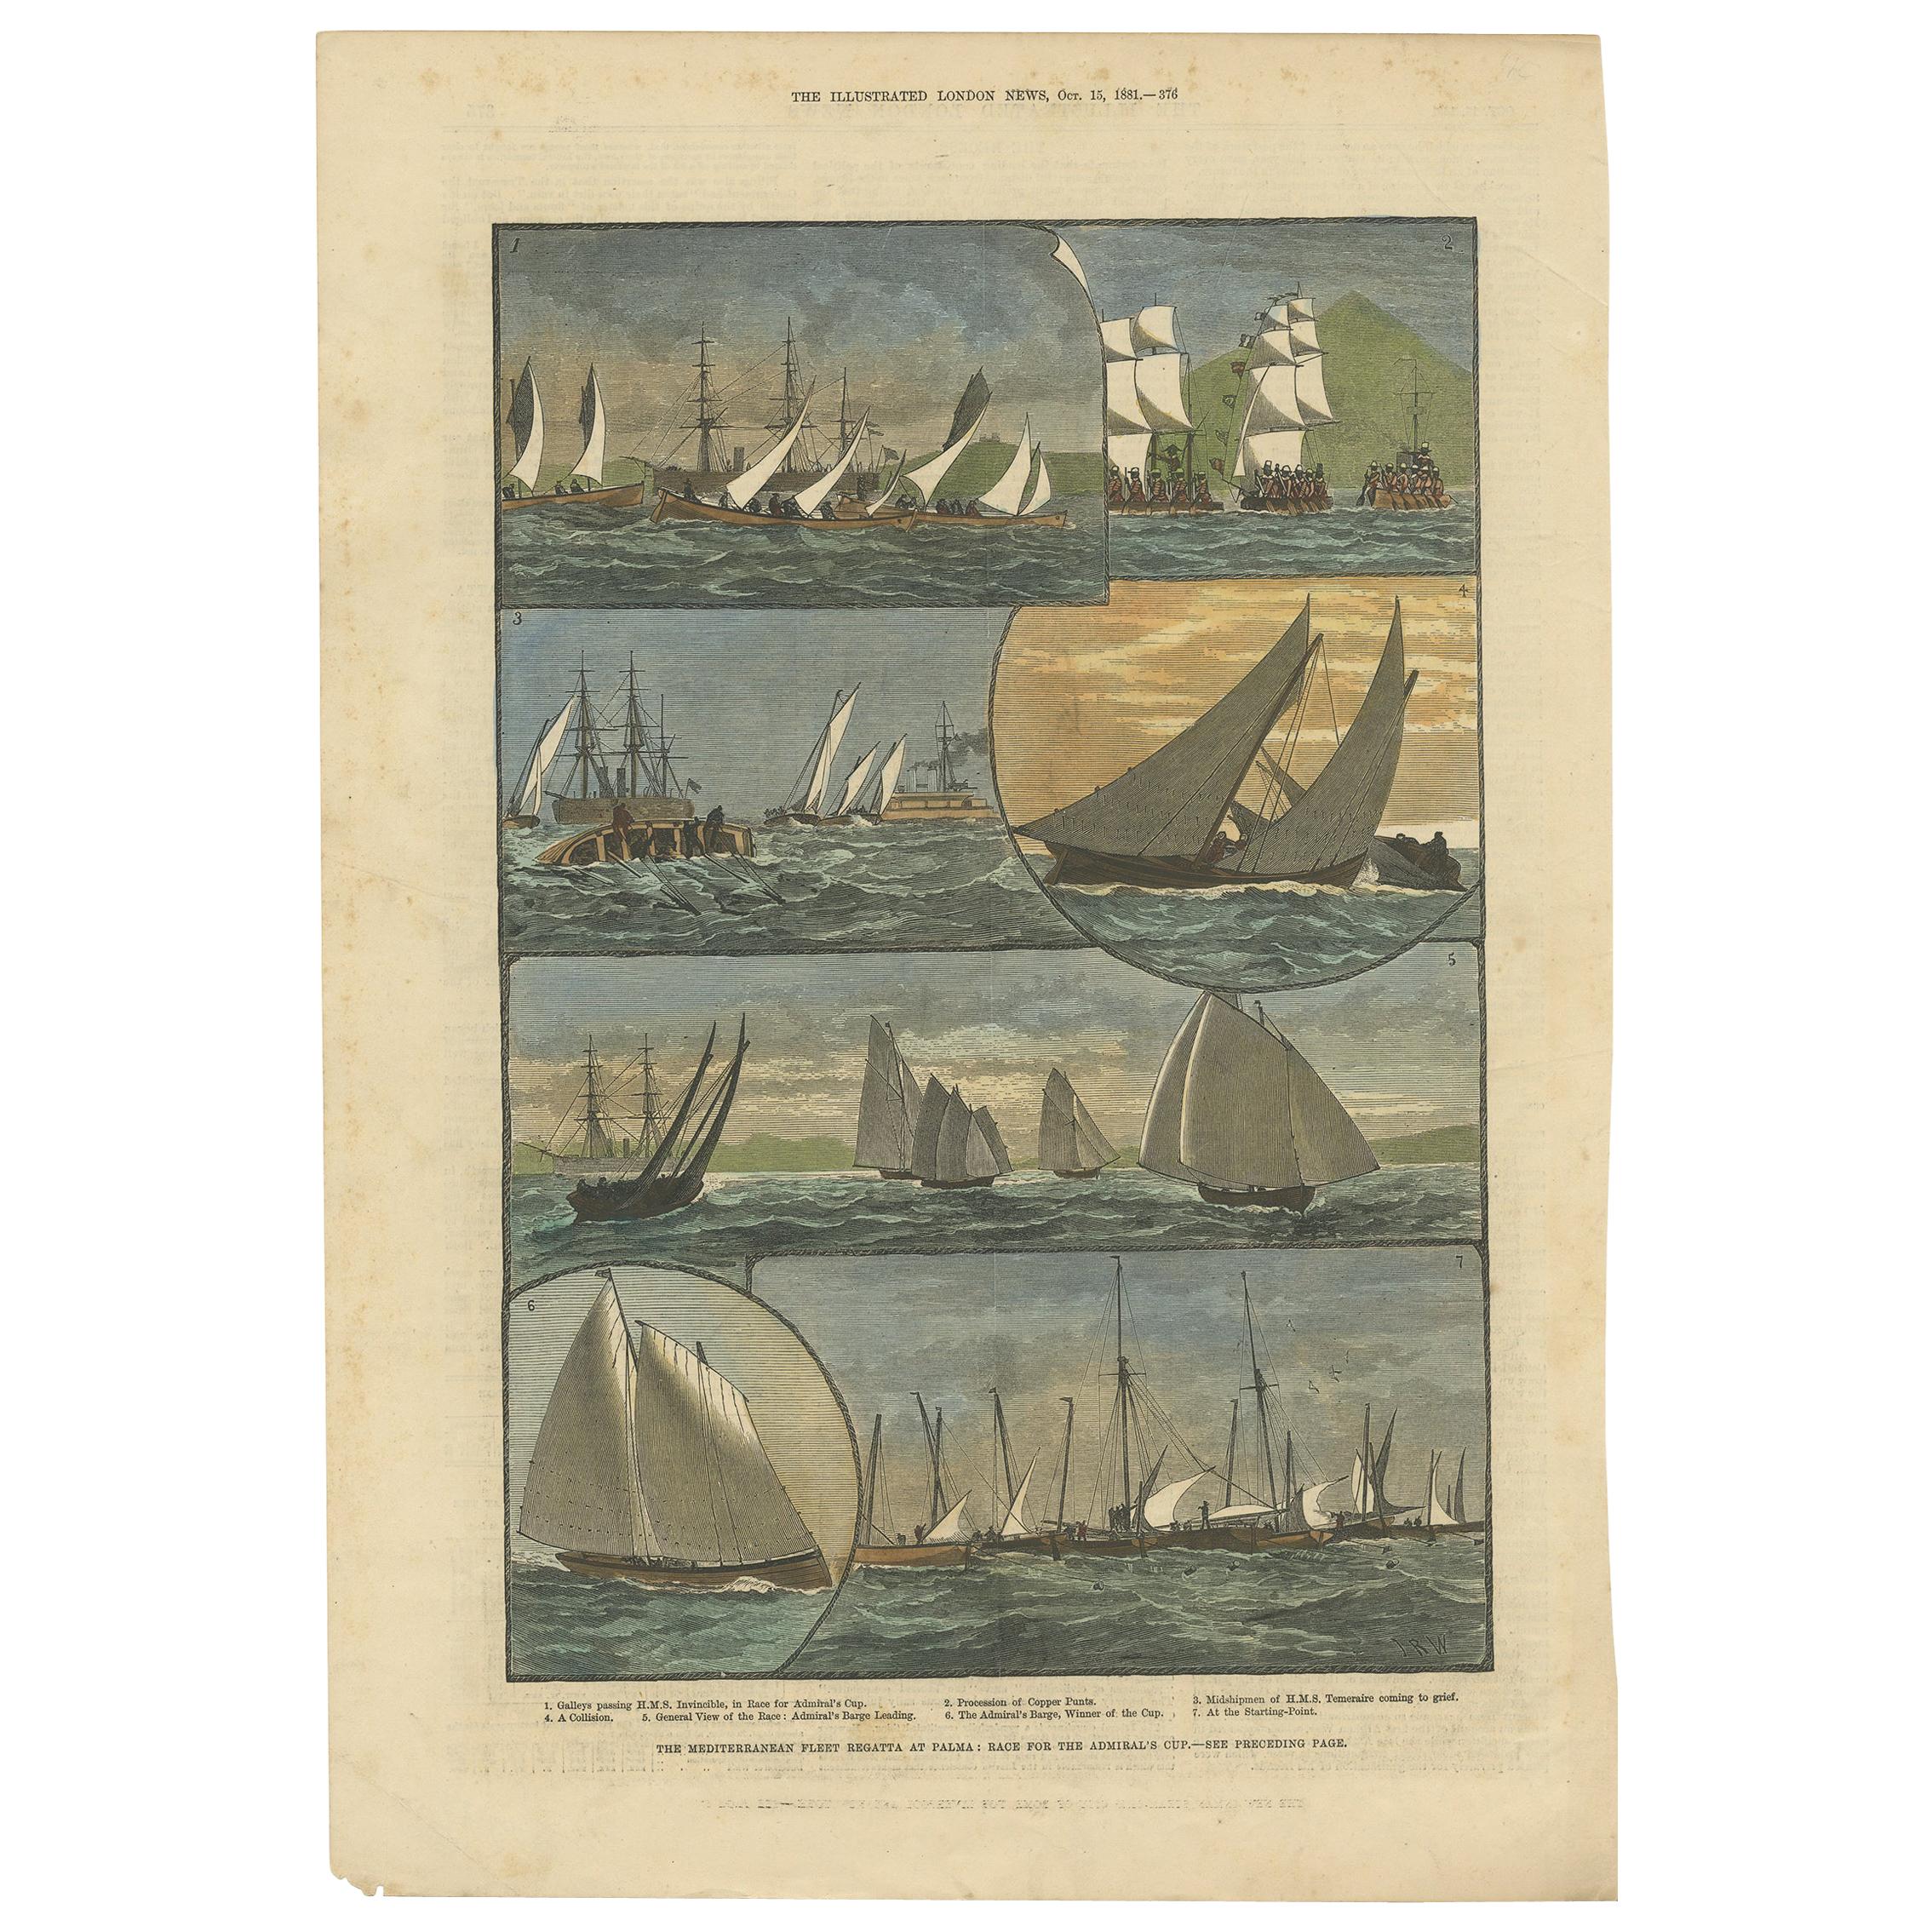 Antiker antiker Druck der Seeregatta der Mittelmeerflotte auf Palma, 1881, farbig